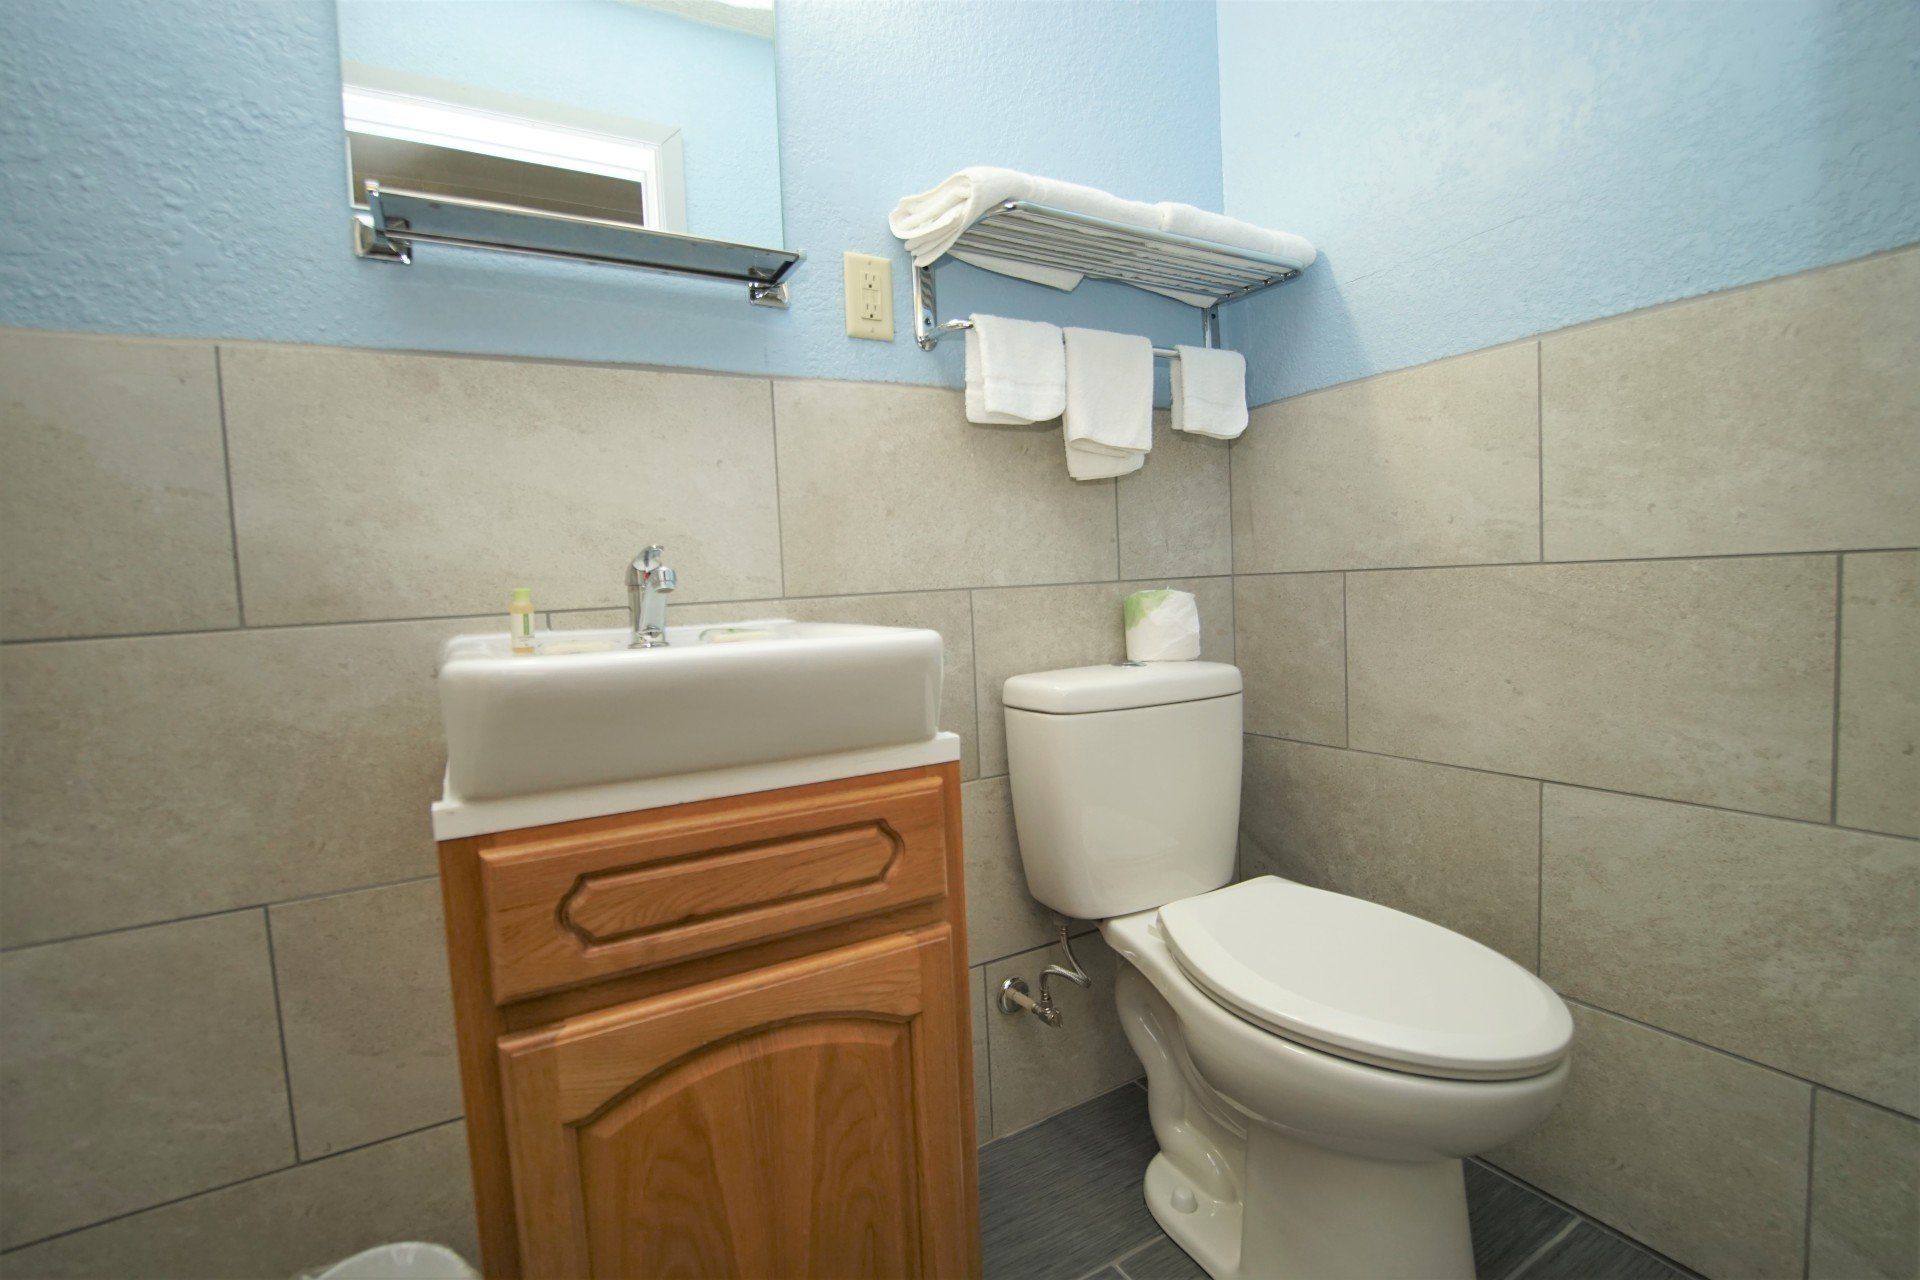 Standard 1 Queen Bathroom Toilet